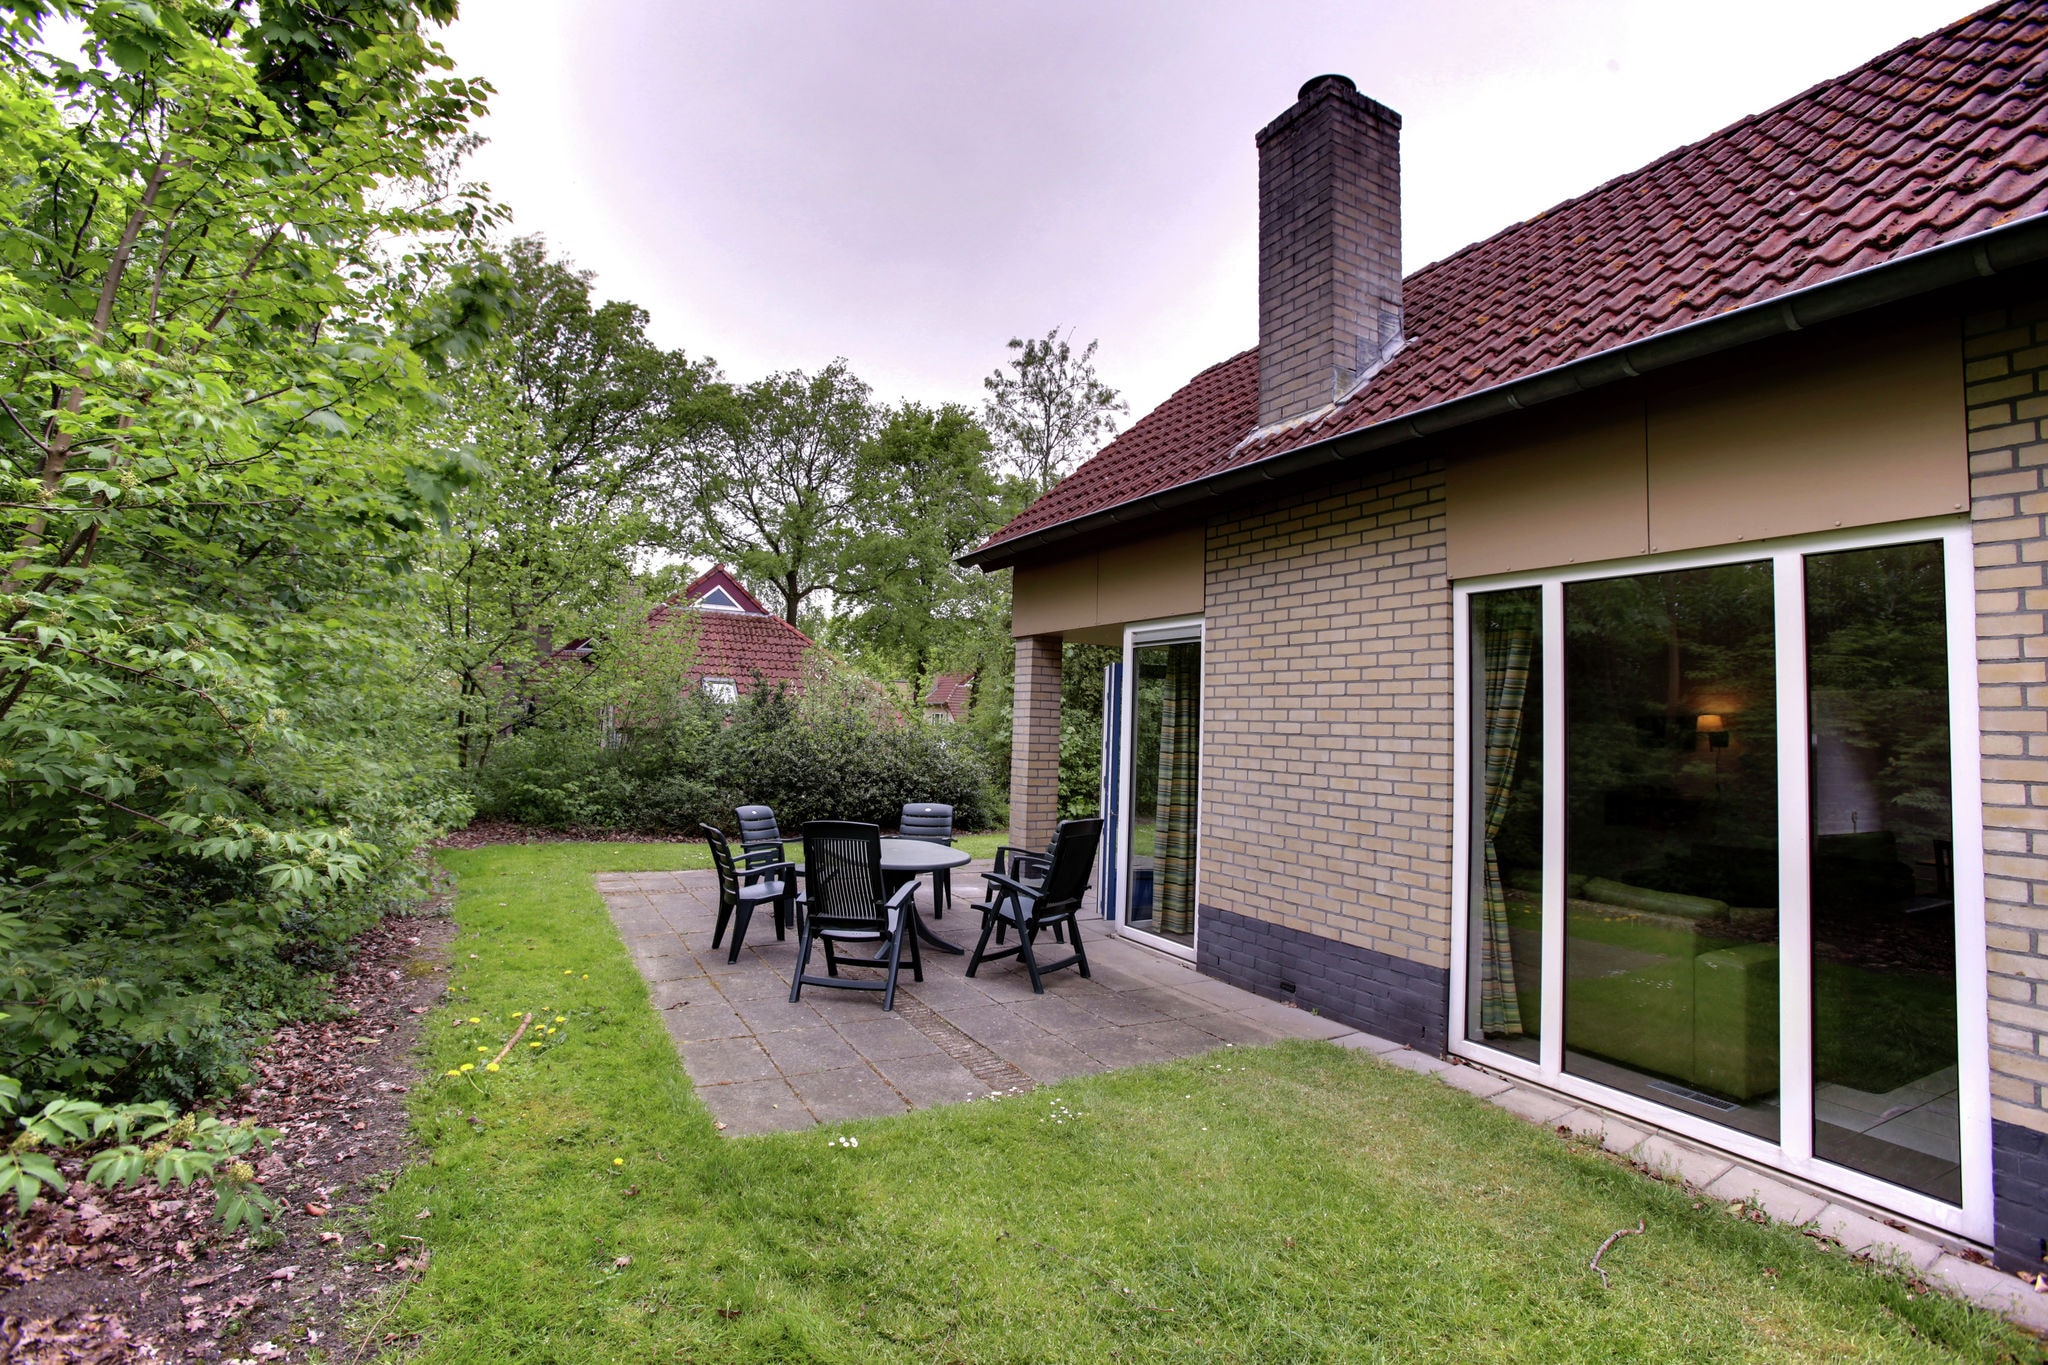 Ferienhaus mit Garten, in der Nähe von Zwolle